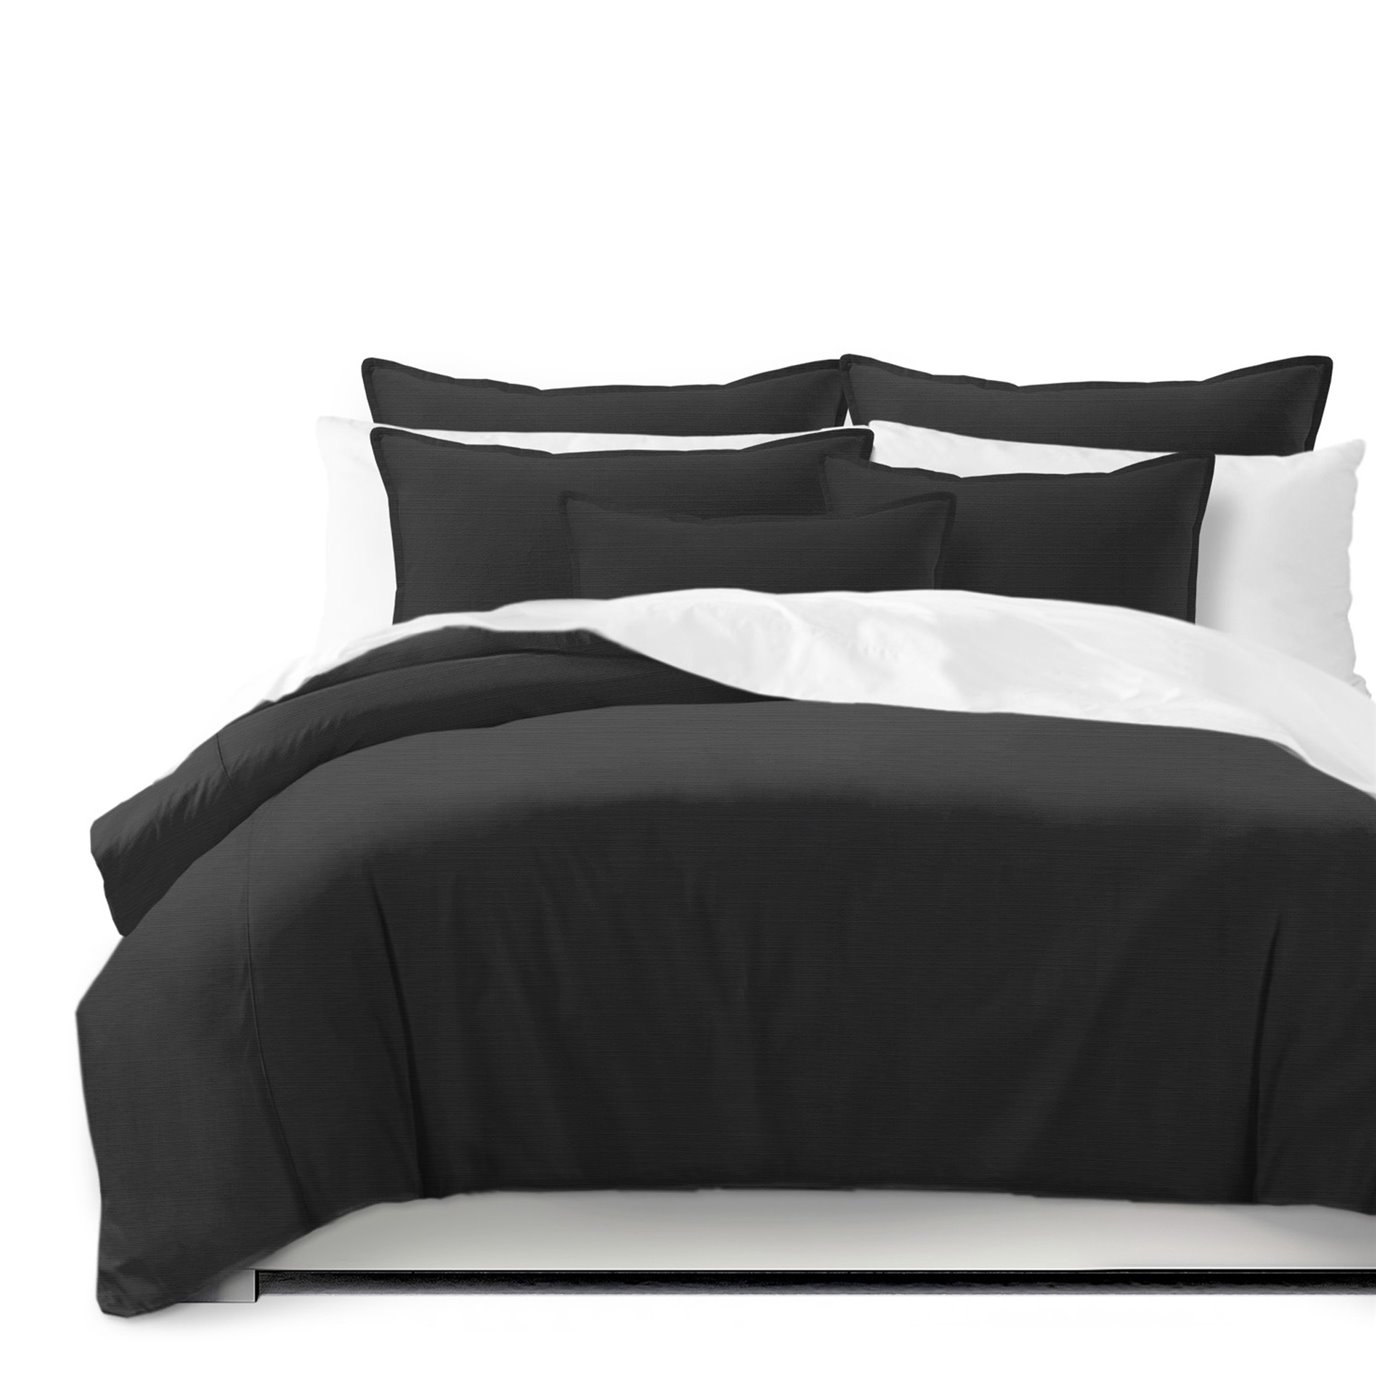 Nova Black Coverlet and Pillow Sham(s) Set - Size Full